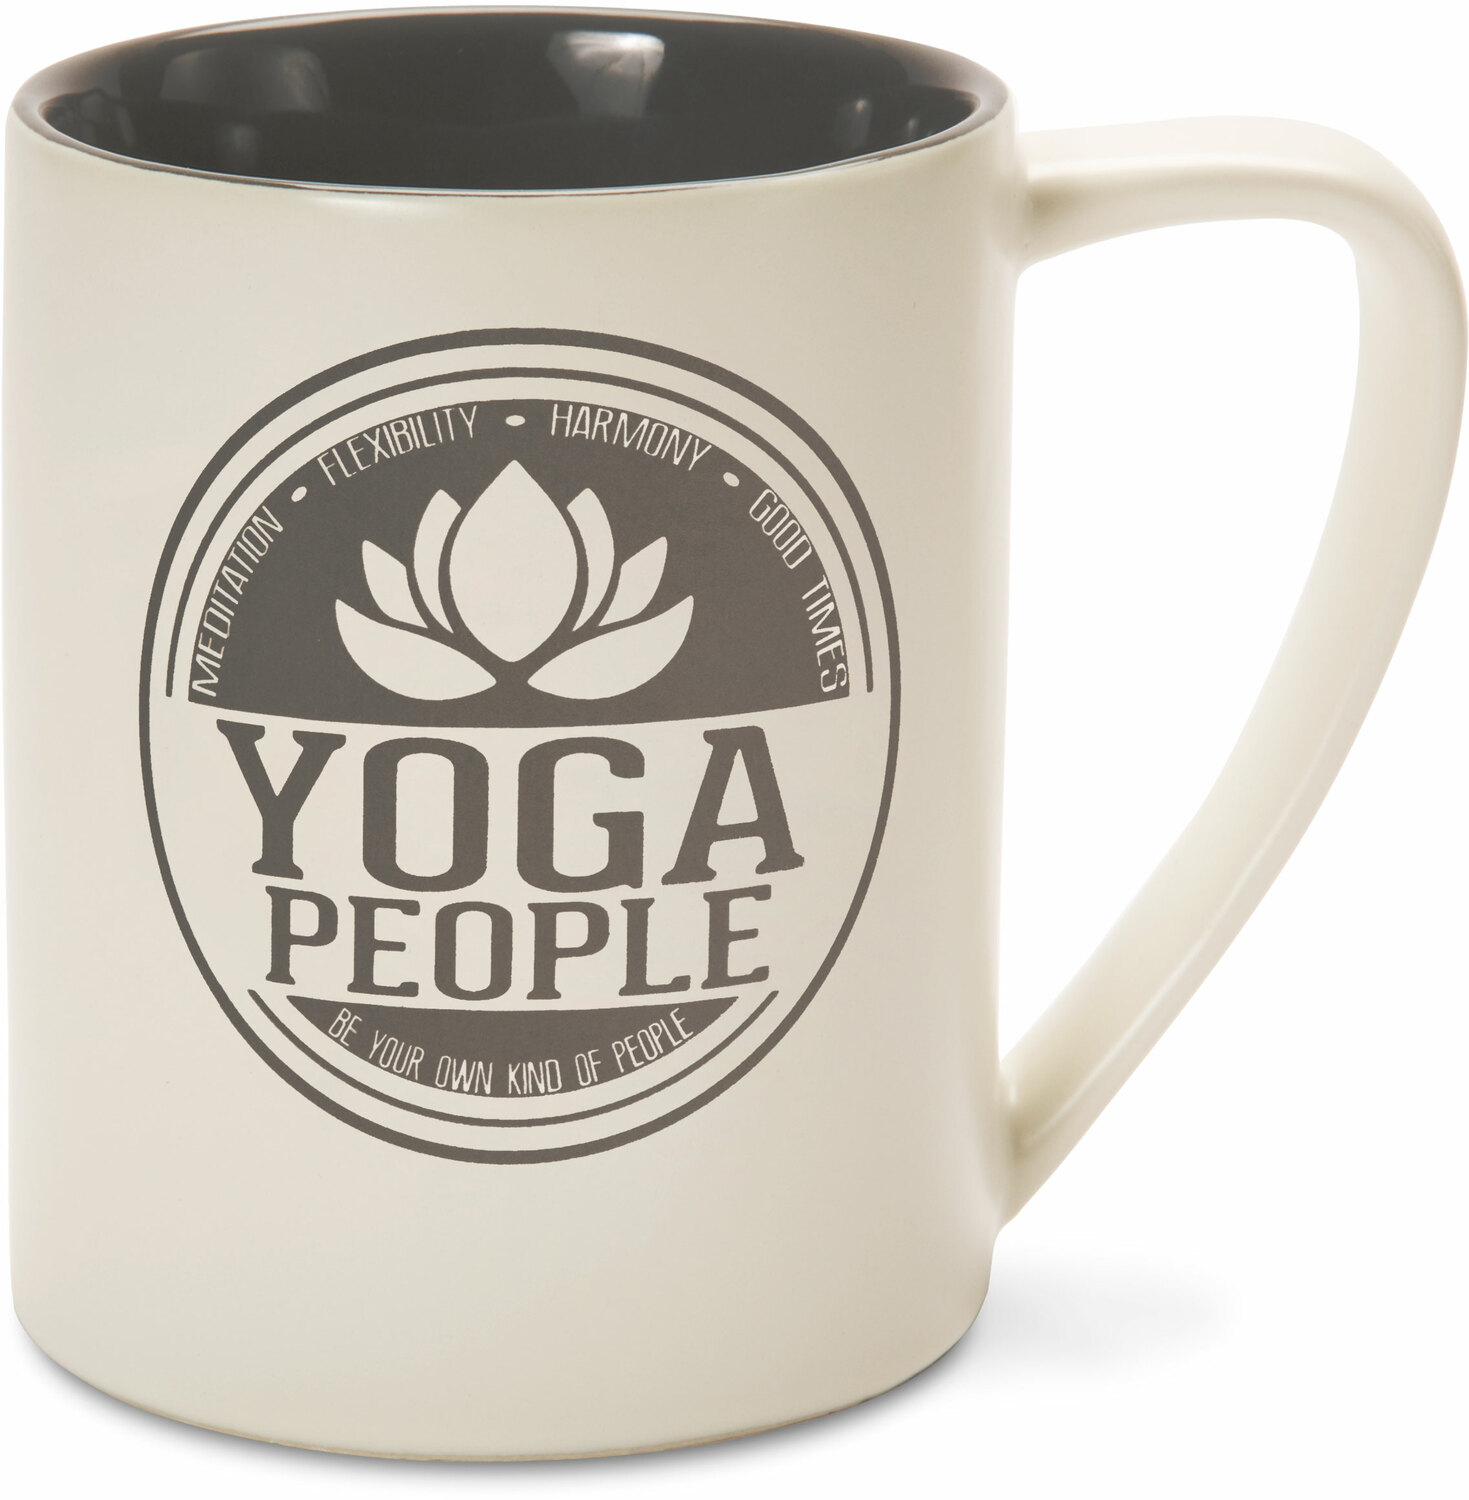 Yoga People by We People - Yoga People - 18 oz Mug